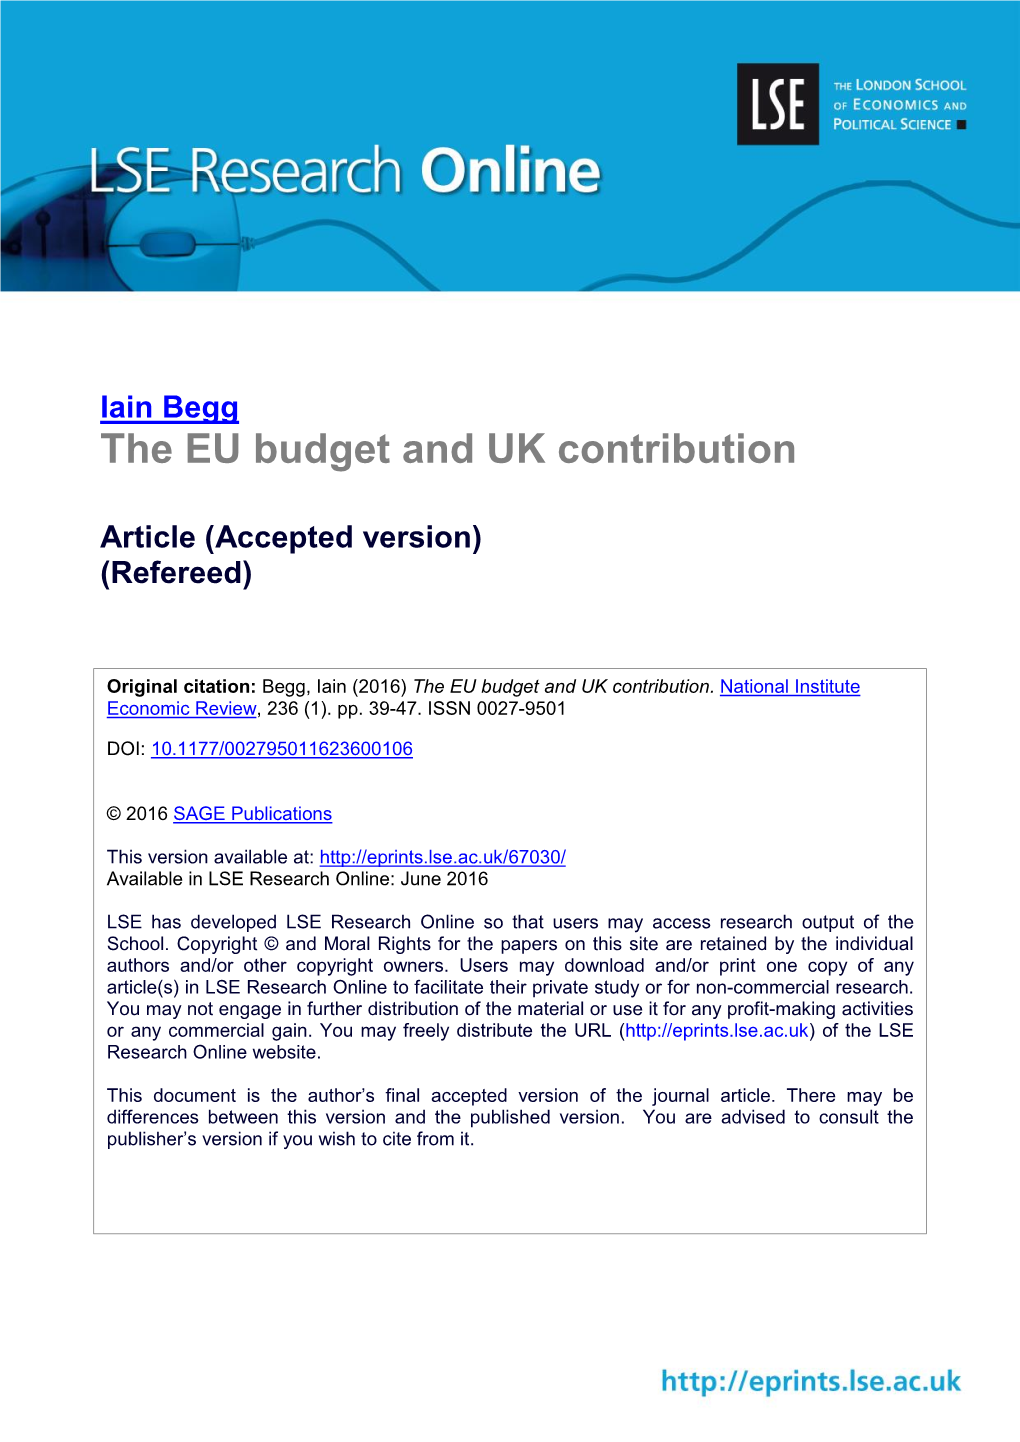 The EU Budget and UK Contribution